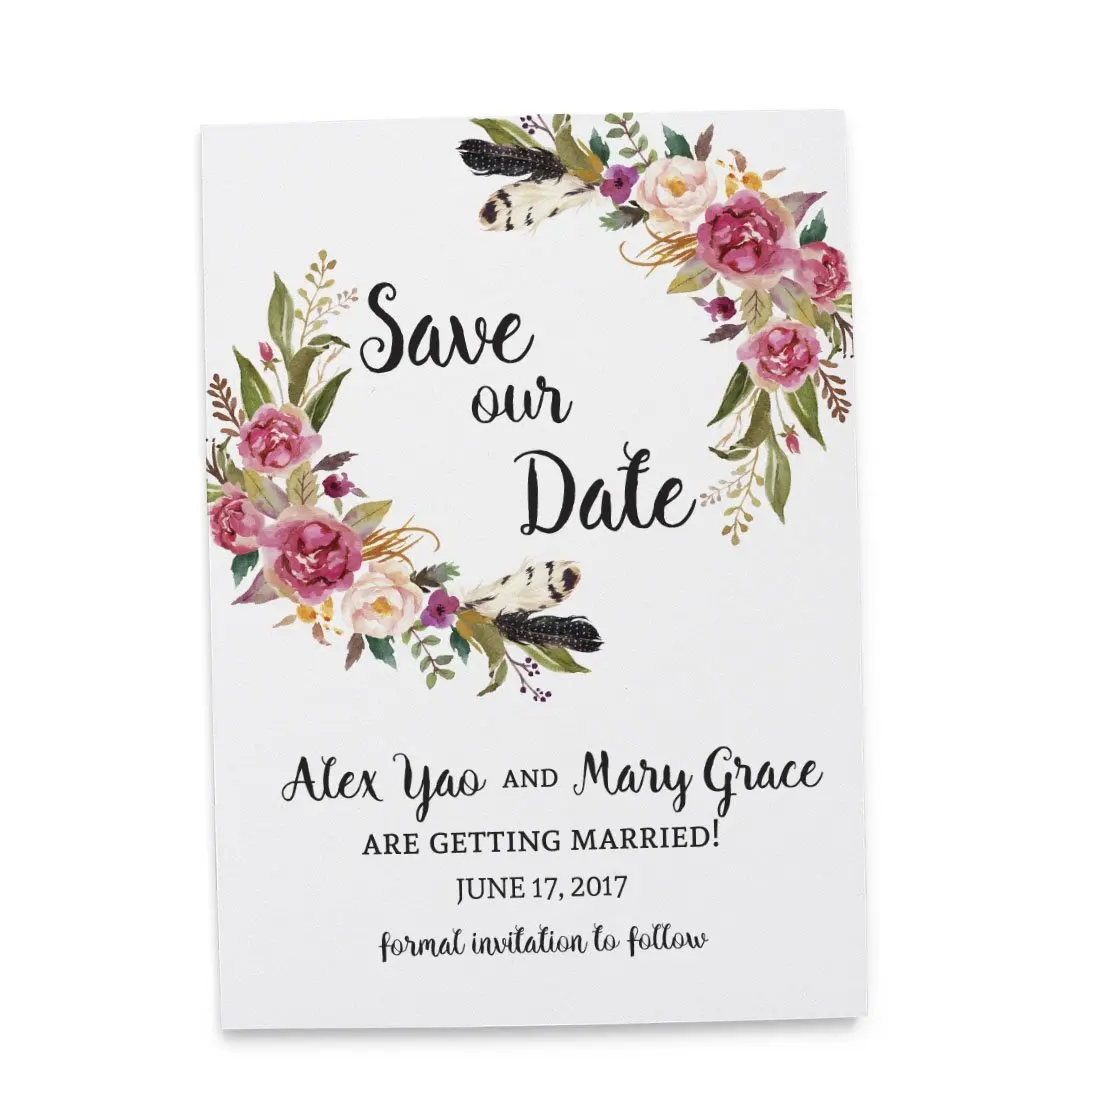 Cheap Unique Wedding Cards Find Unique Wedding Cards Deals On